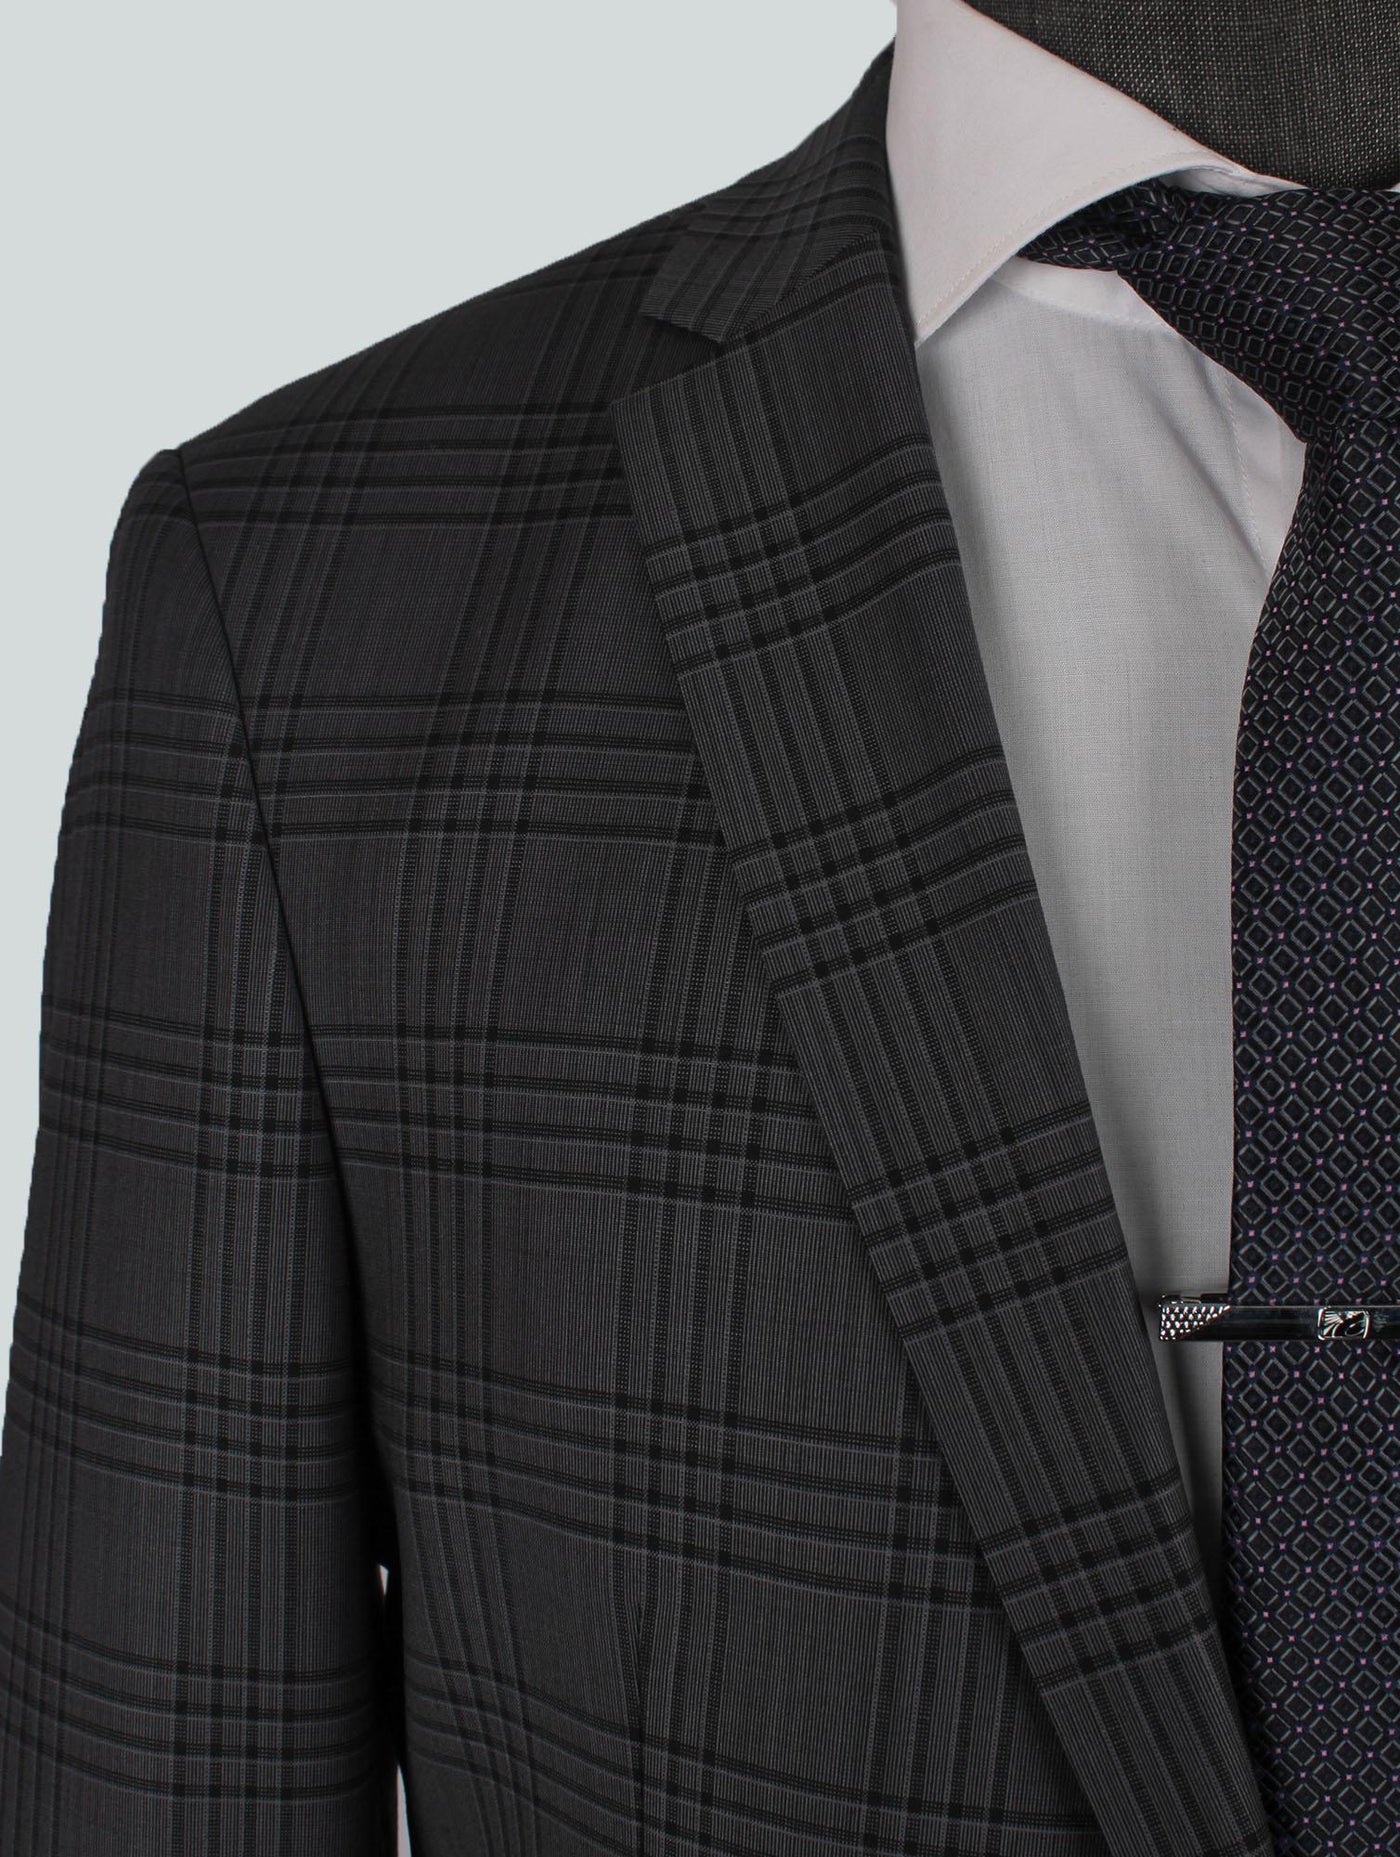 Stripe Coffee Gray Bespoke Men Suit Tailored